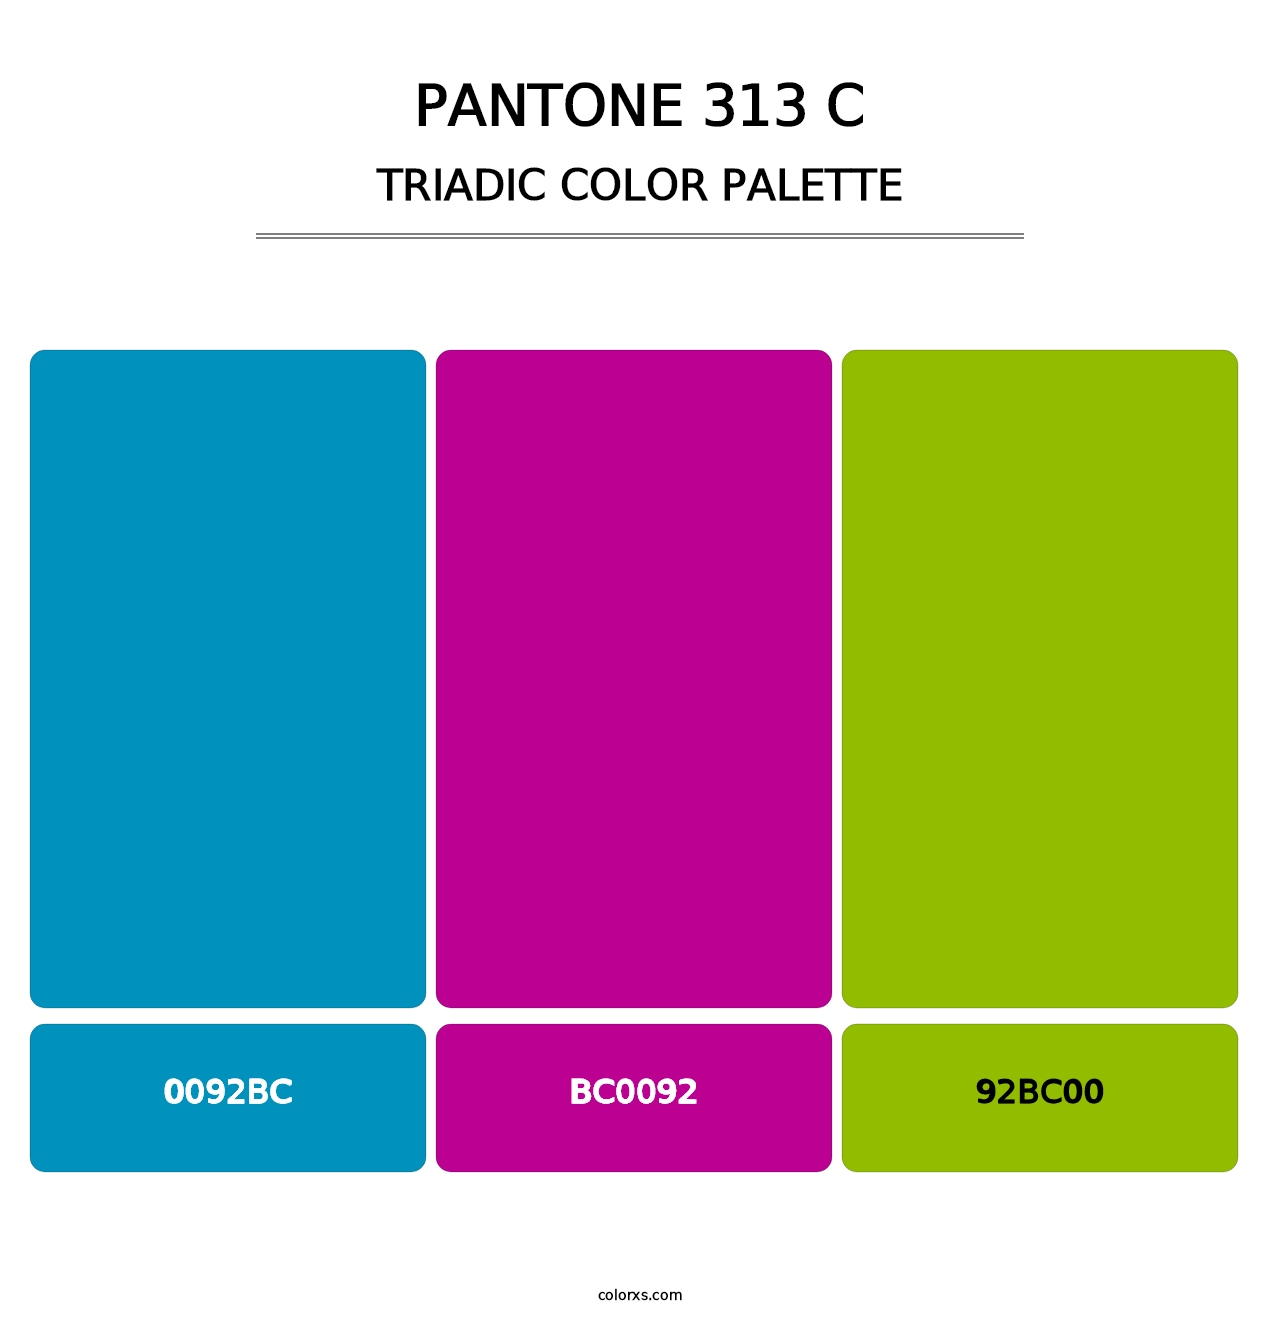 PANTONE 313 C - Triadic Color Palette